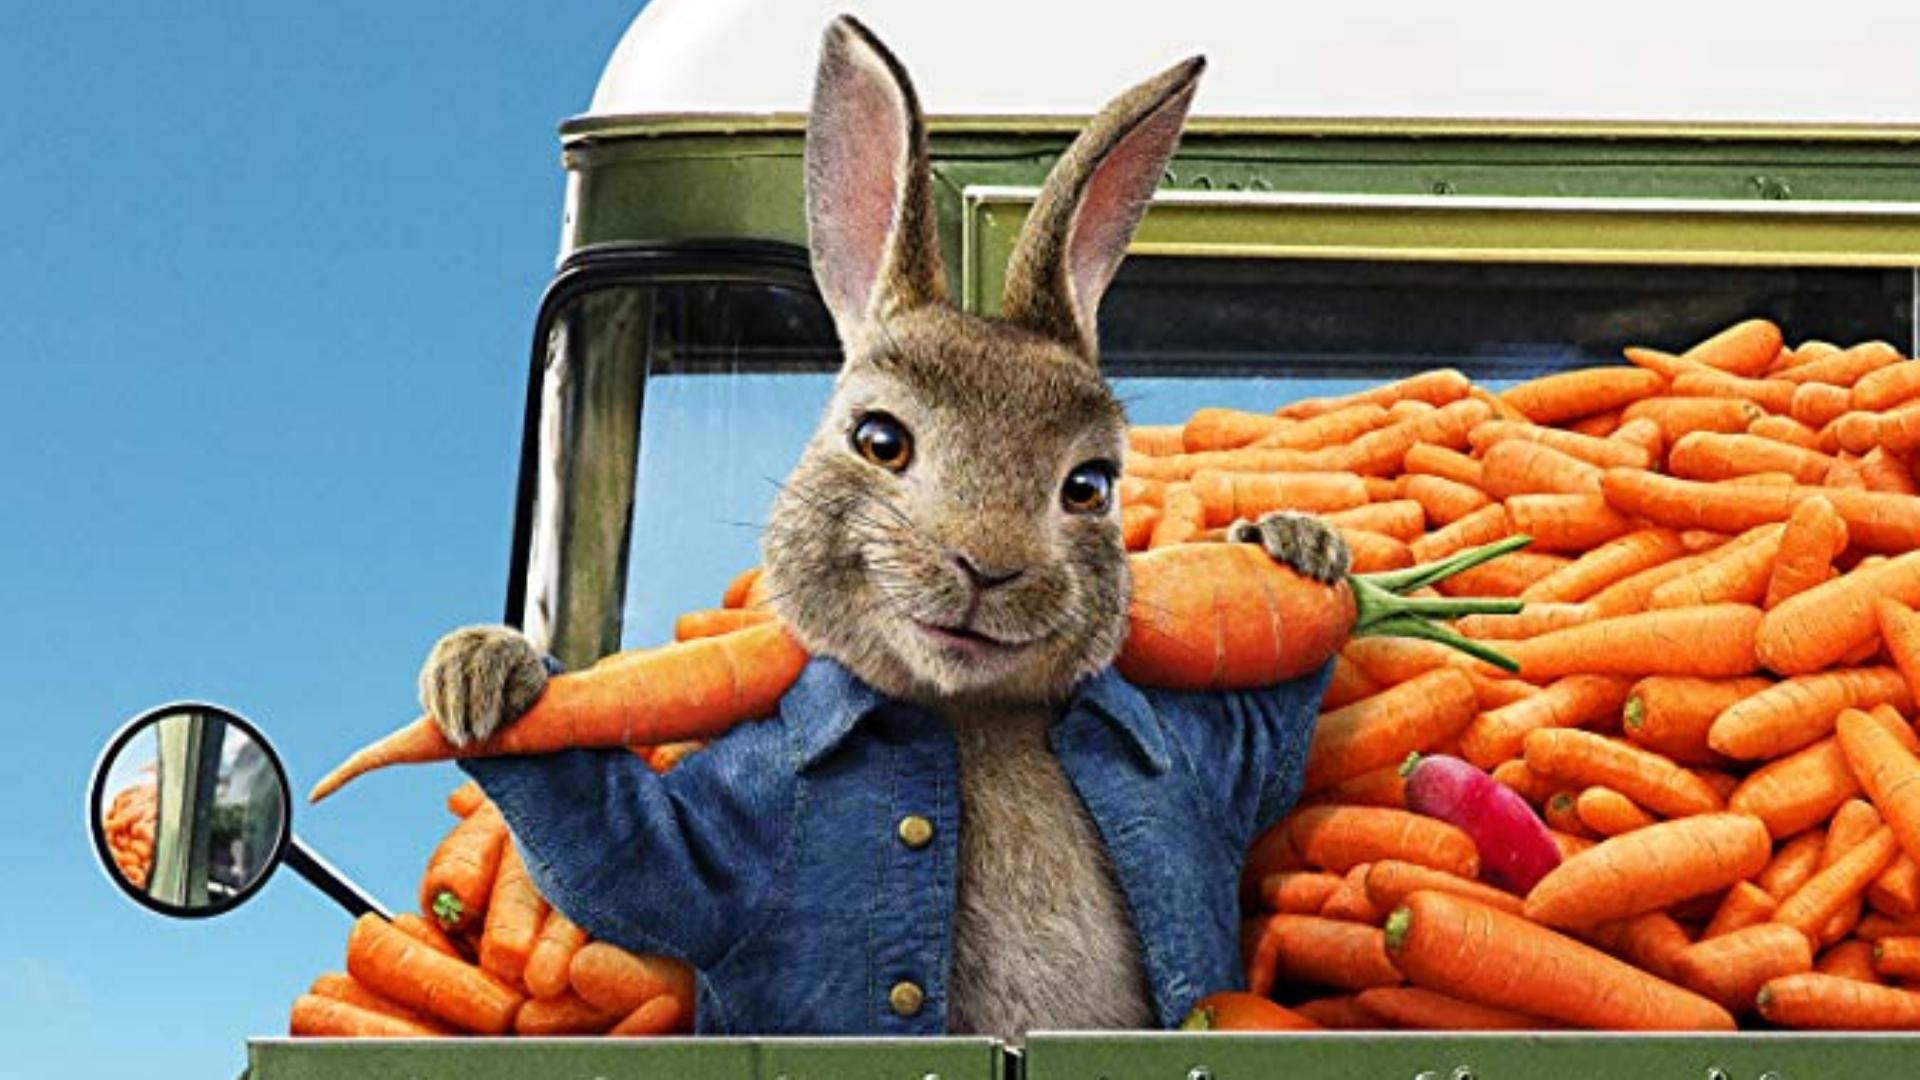 ‘Peter Rabbit 2’: The Runaway Hare